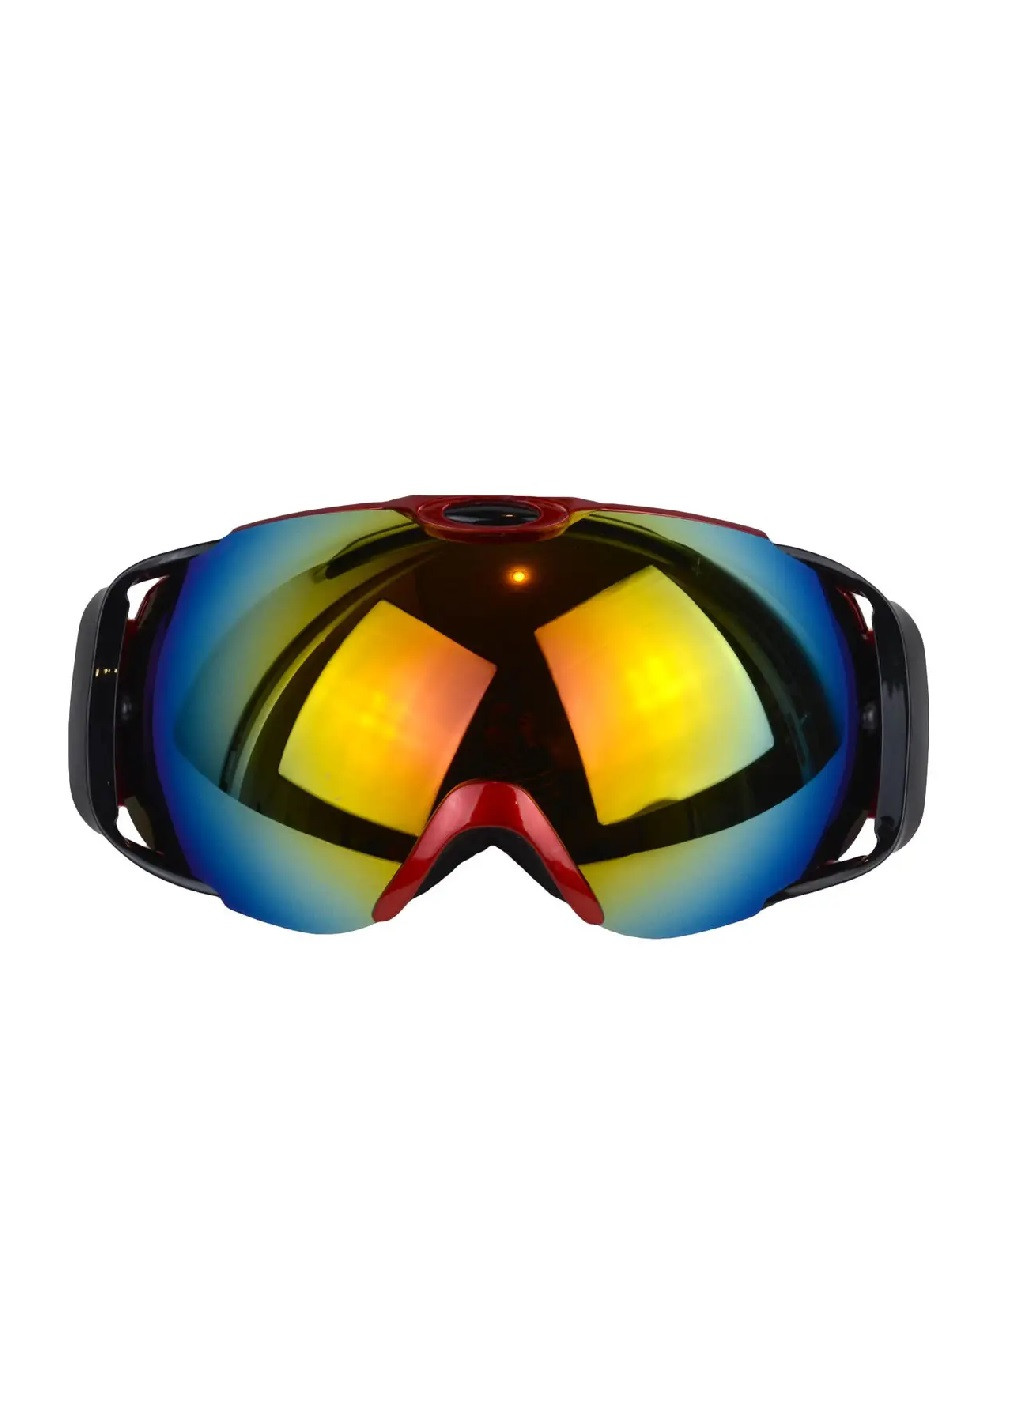 Маска очки горнолыжные защитные для сноуборда лыж зимних видов спорта с регулируемым ремешком (475939-Prob) Красный корпус Unbranded (275068650)